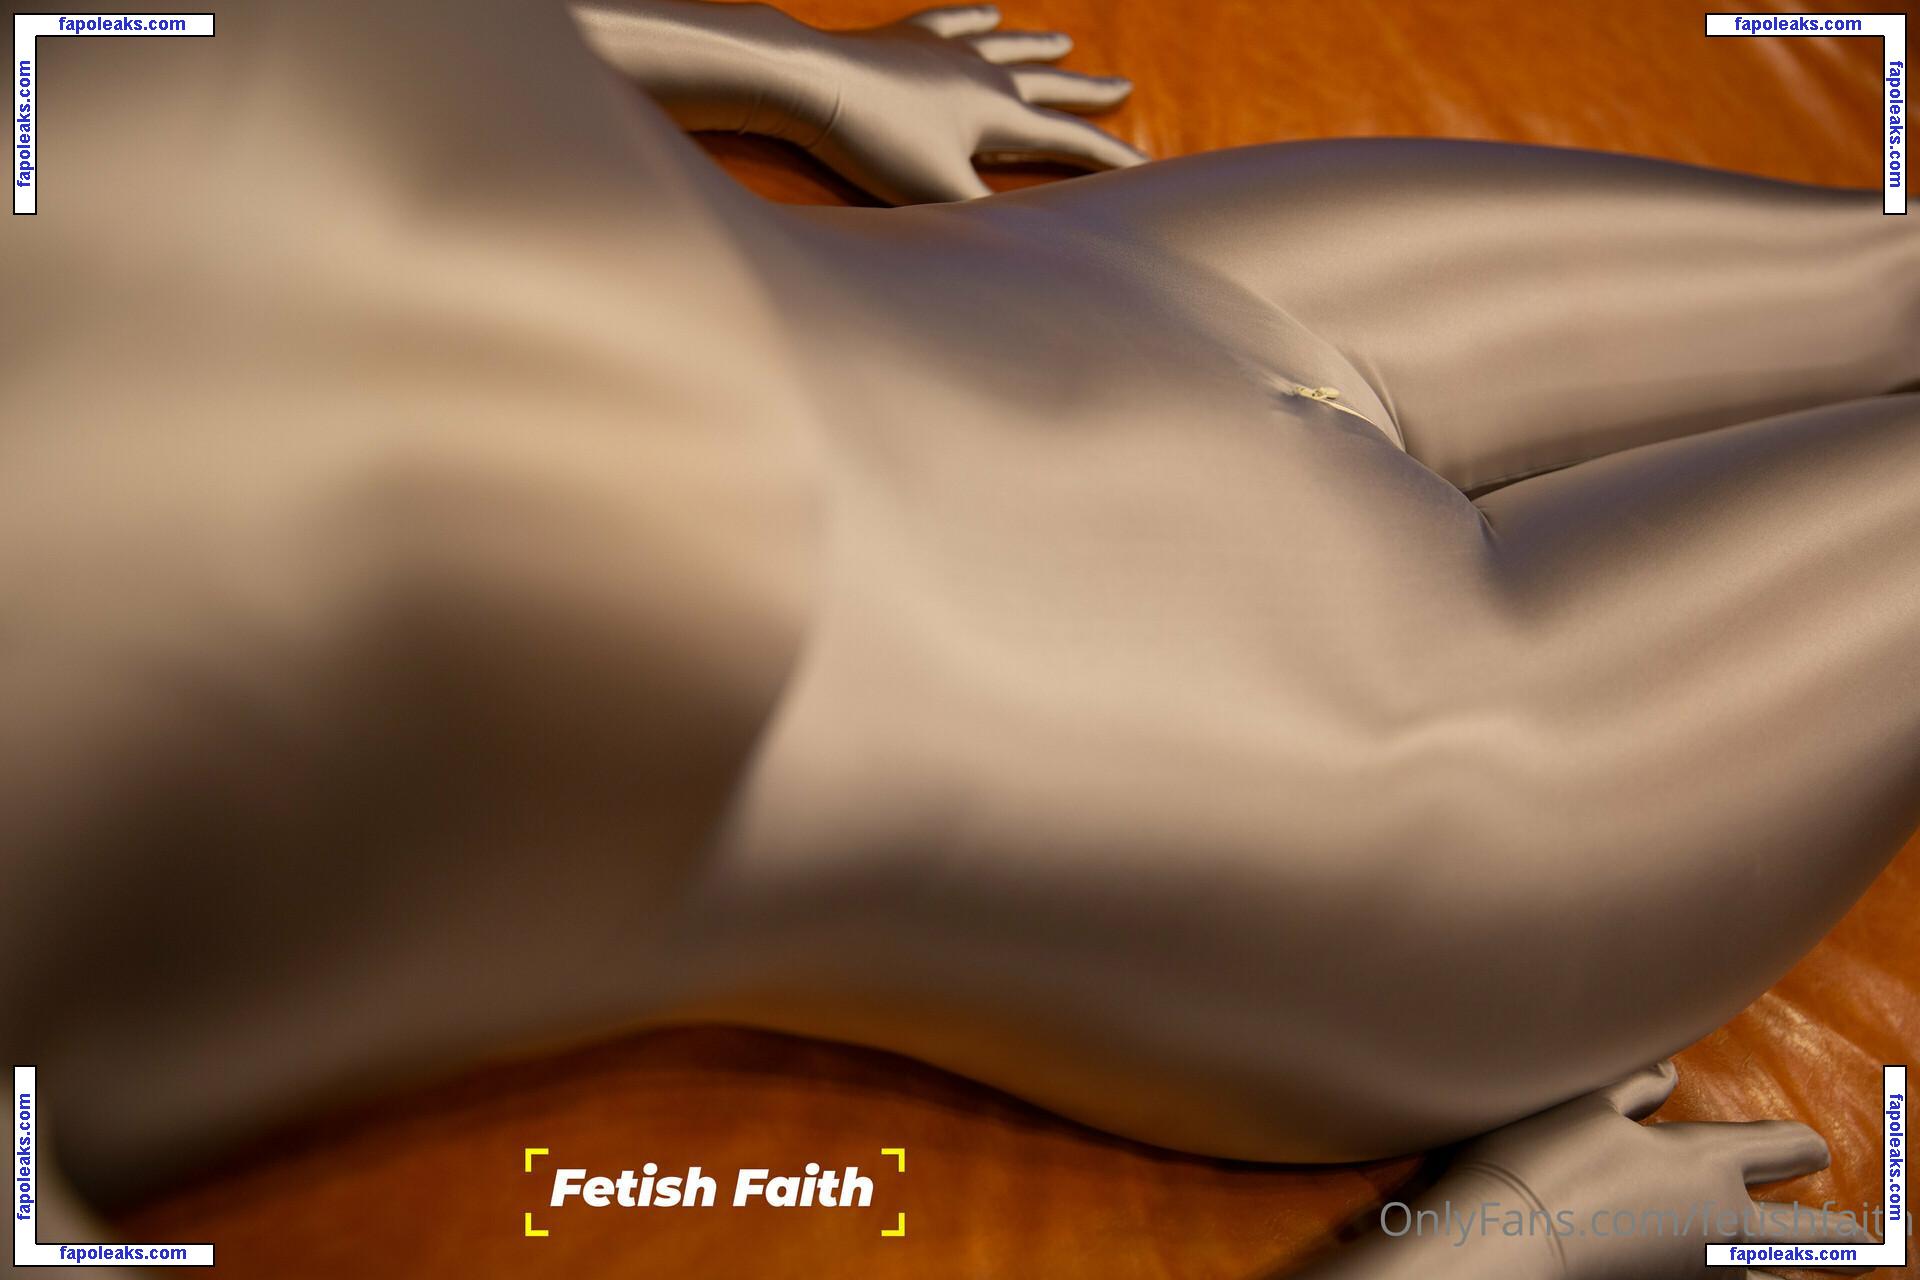 fetishfaith / fetishfaith22 nude photo #0022 from OnlyFans